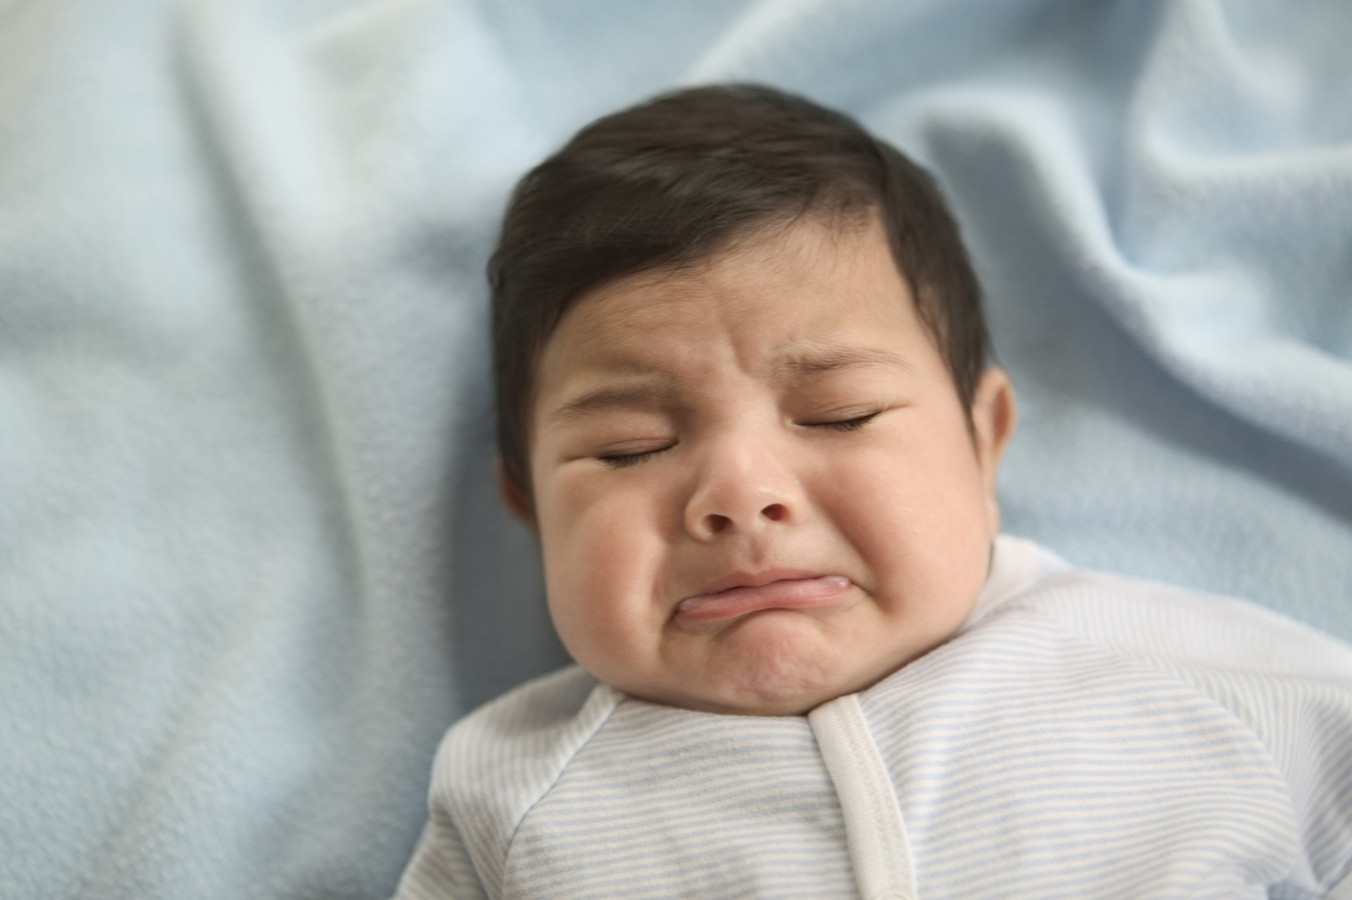 He baby cries. Ребенок плачет. Ребенок сильно плачет. Маленький плачет. Рыдающие младенец в отрыжке.